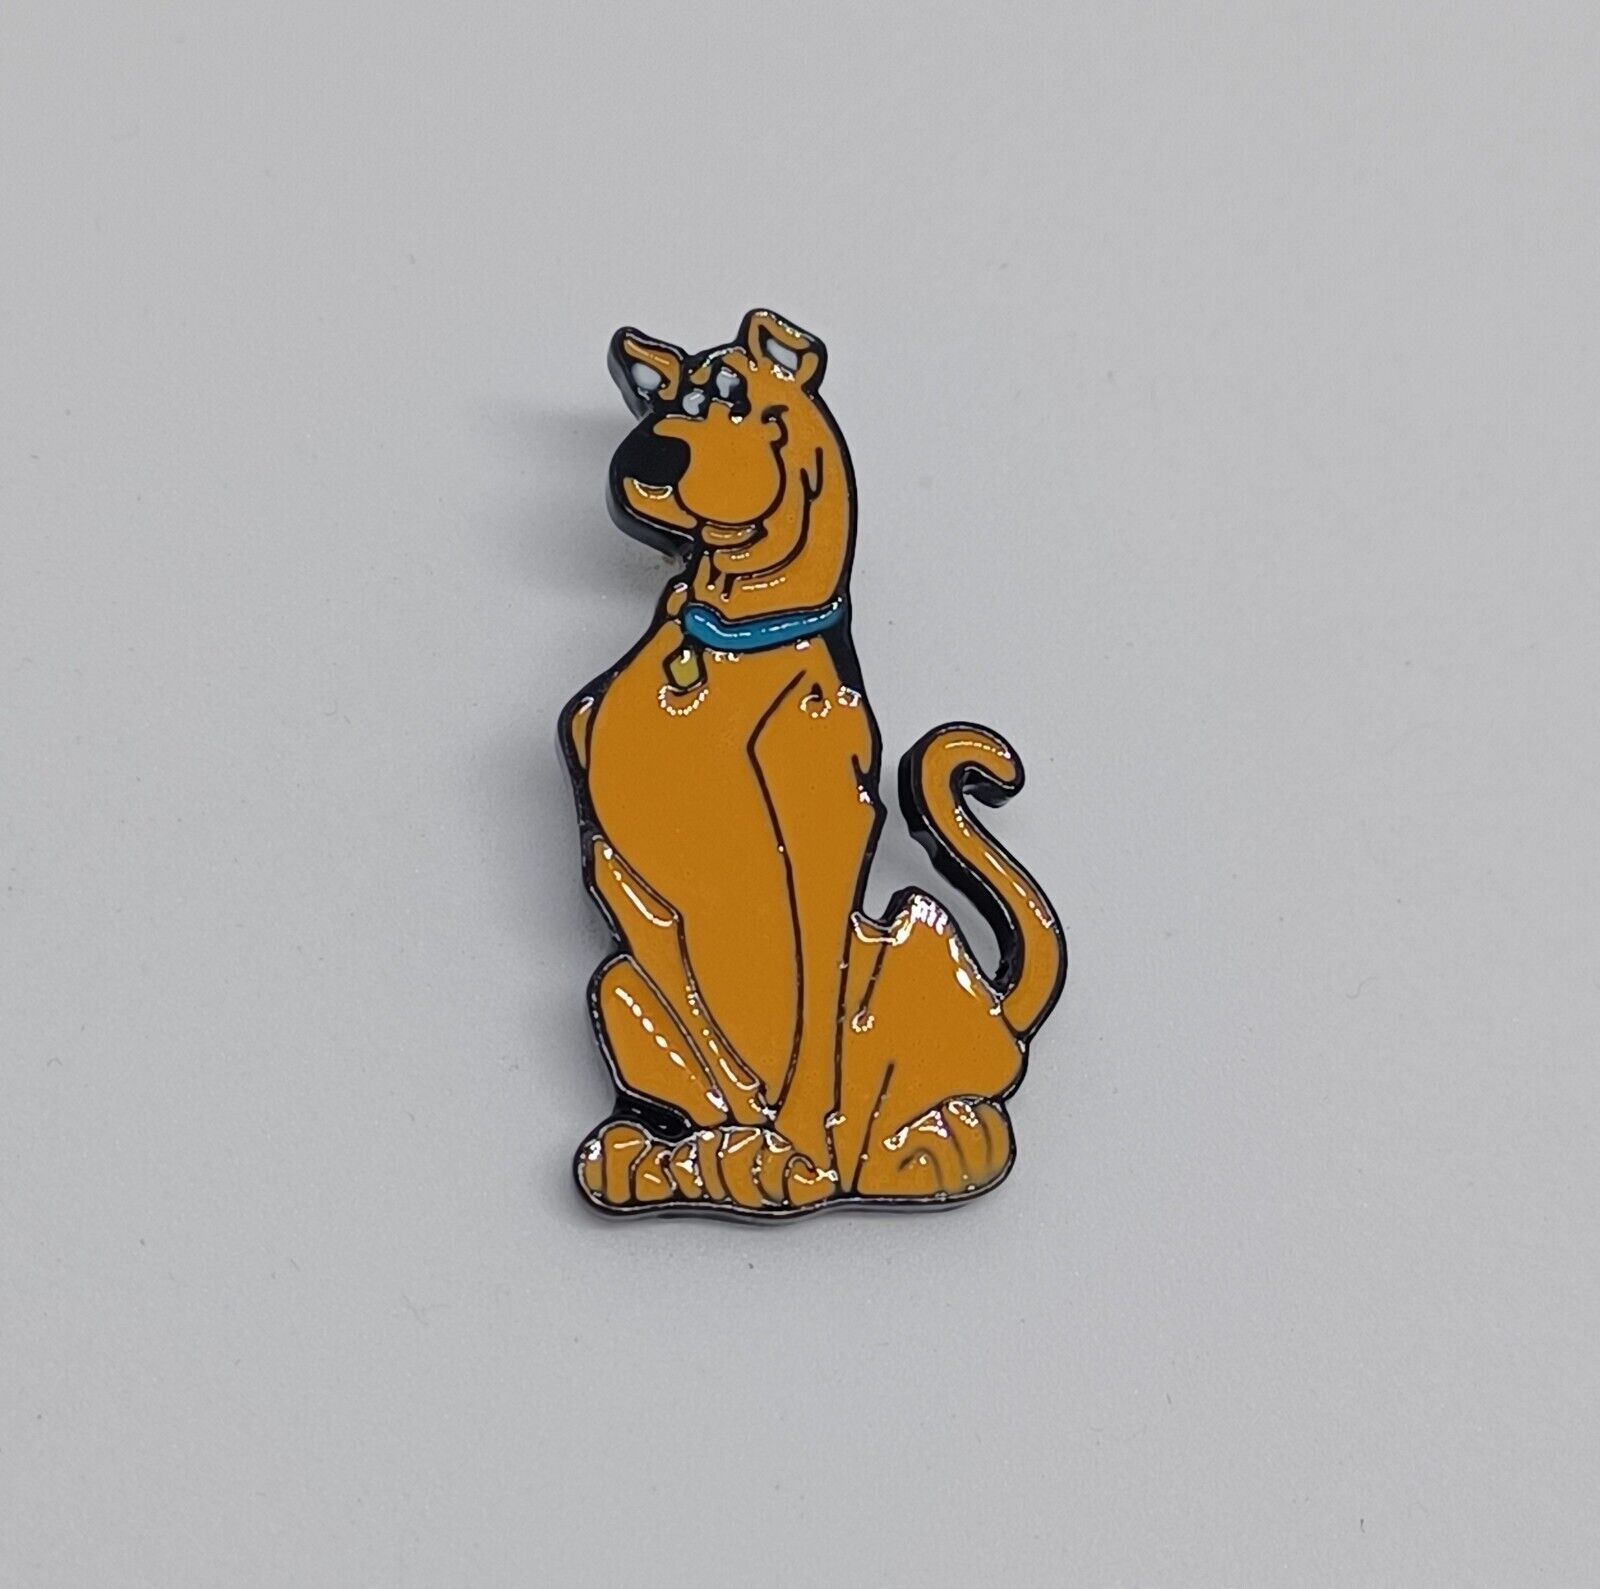 Scooby Doo Dog Animated Carton Retro Novelty Brooch Enamel Lapel Pin